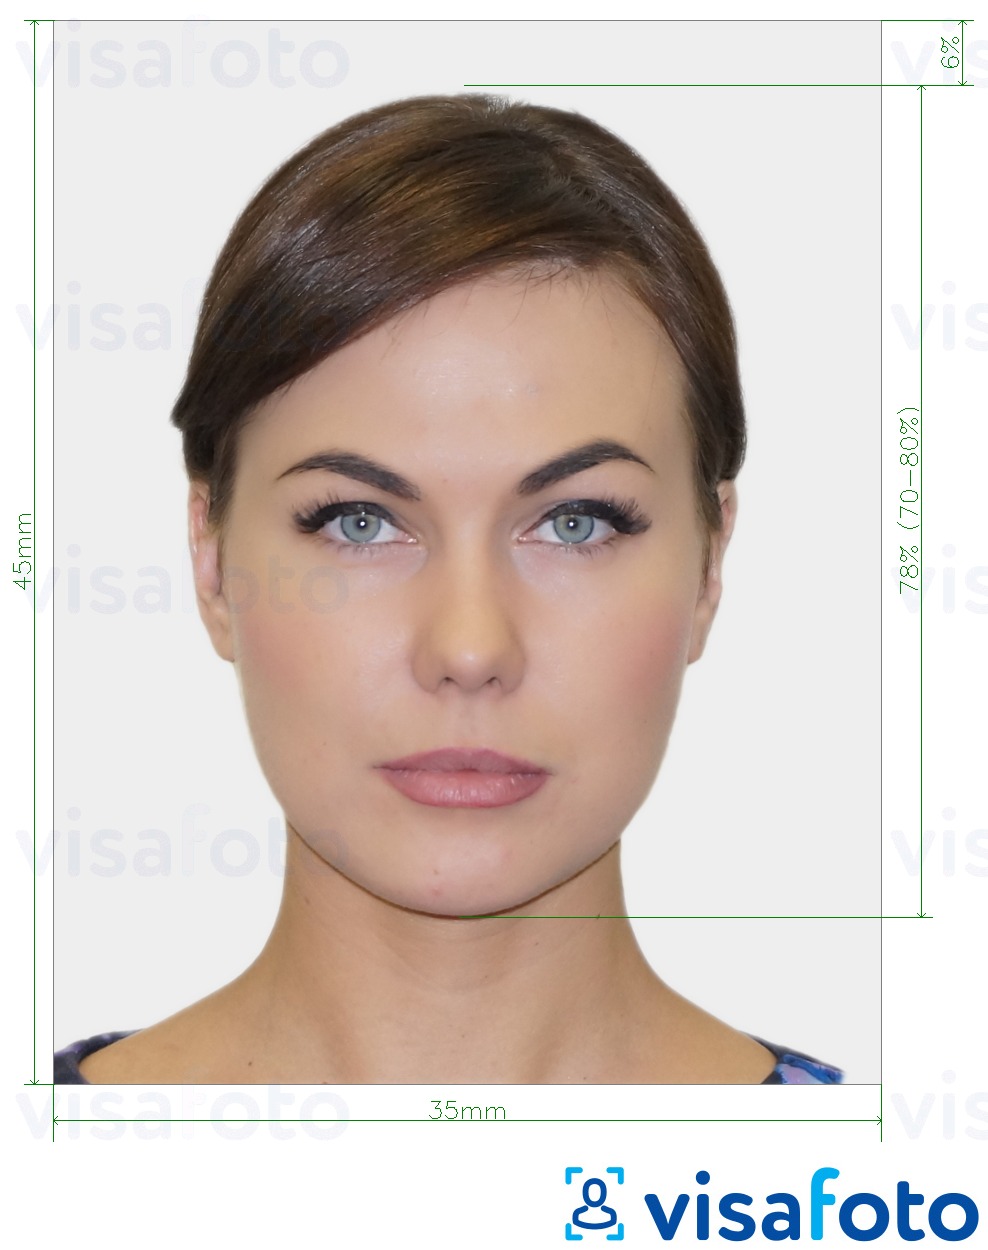 Príklad fotografie pre Biometrická pasová fotografia s presnou špecifikáciou veľkosti